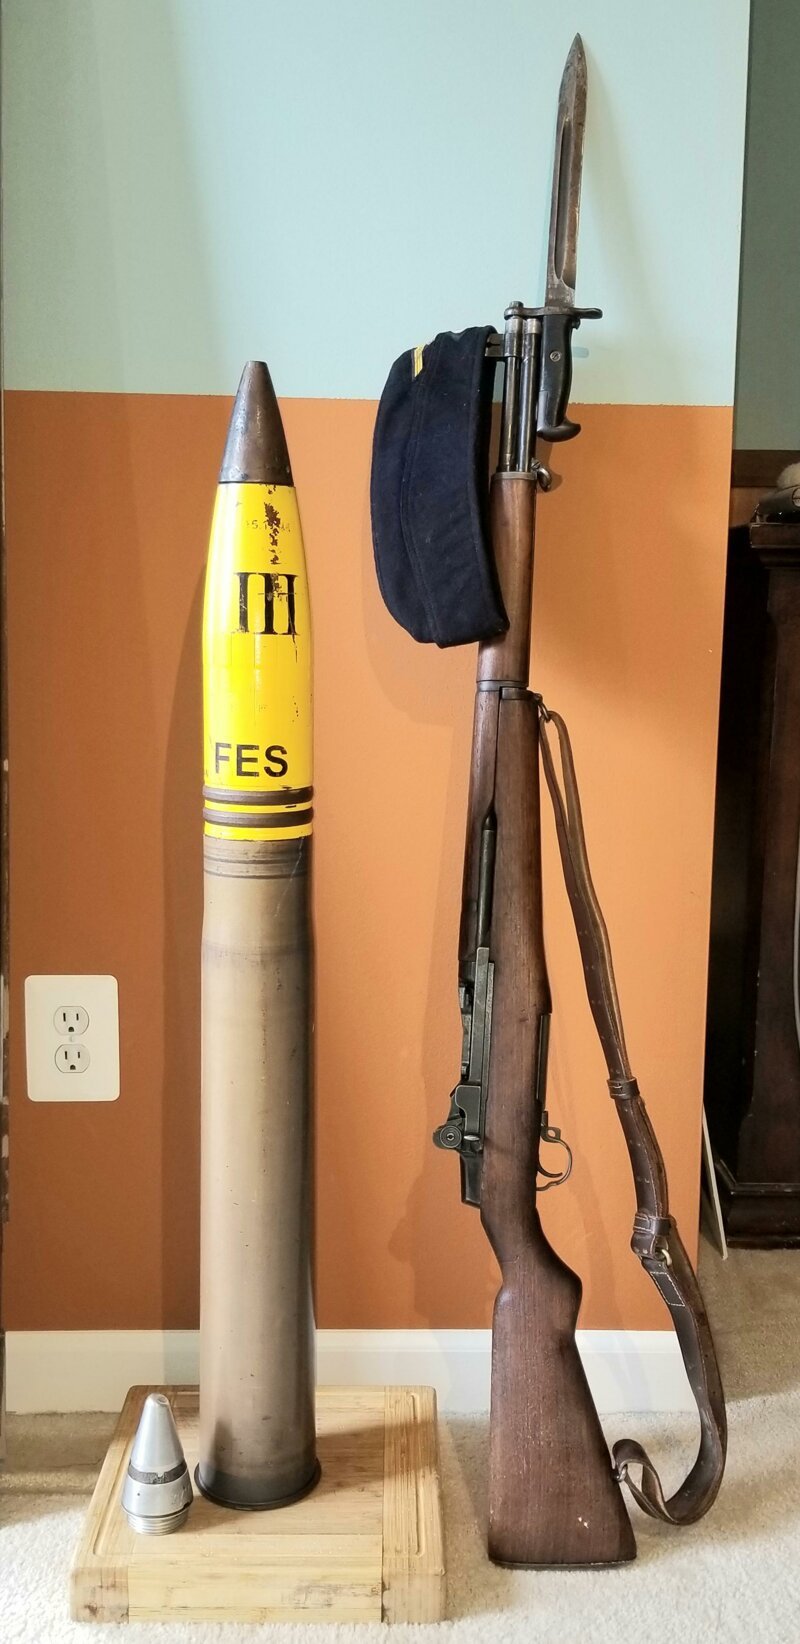 Снаряд 88 мм и M1 Garand — американская самозарядная винтовка времён Второй мировой войны.